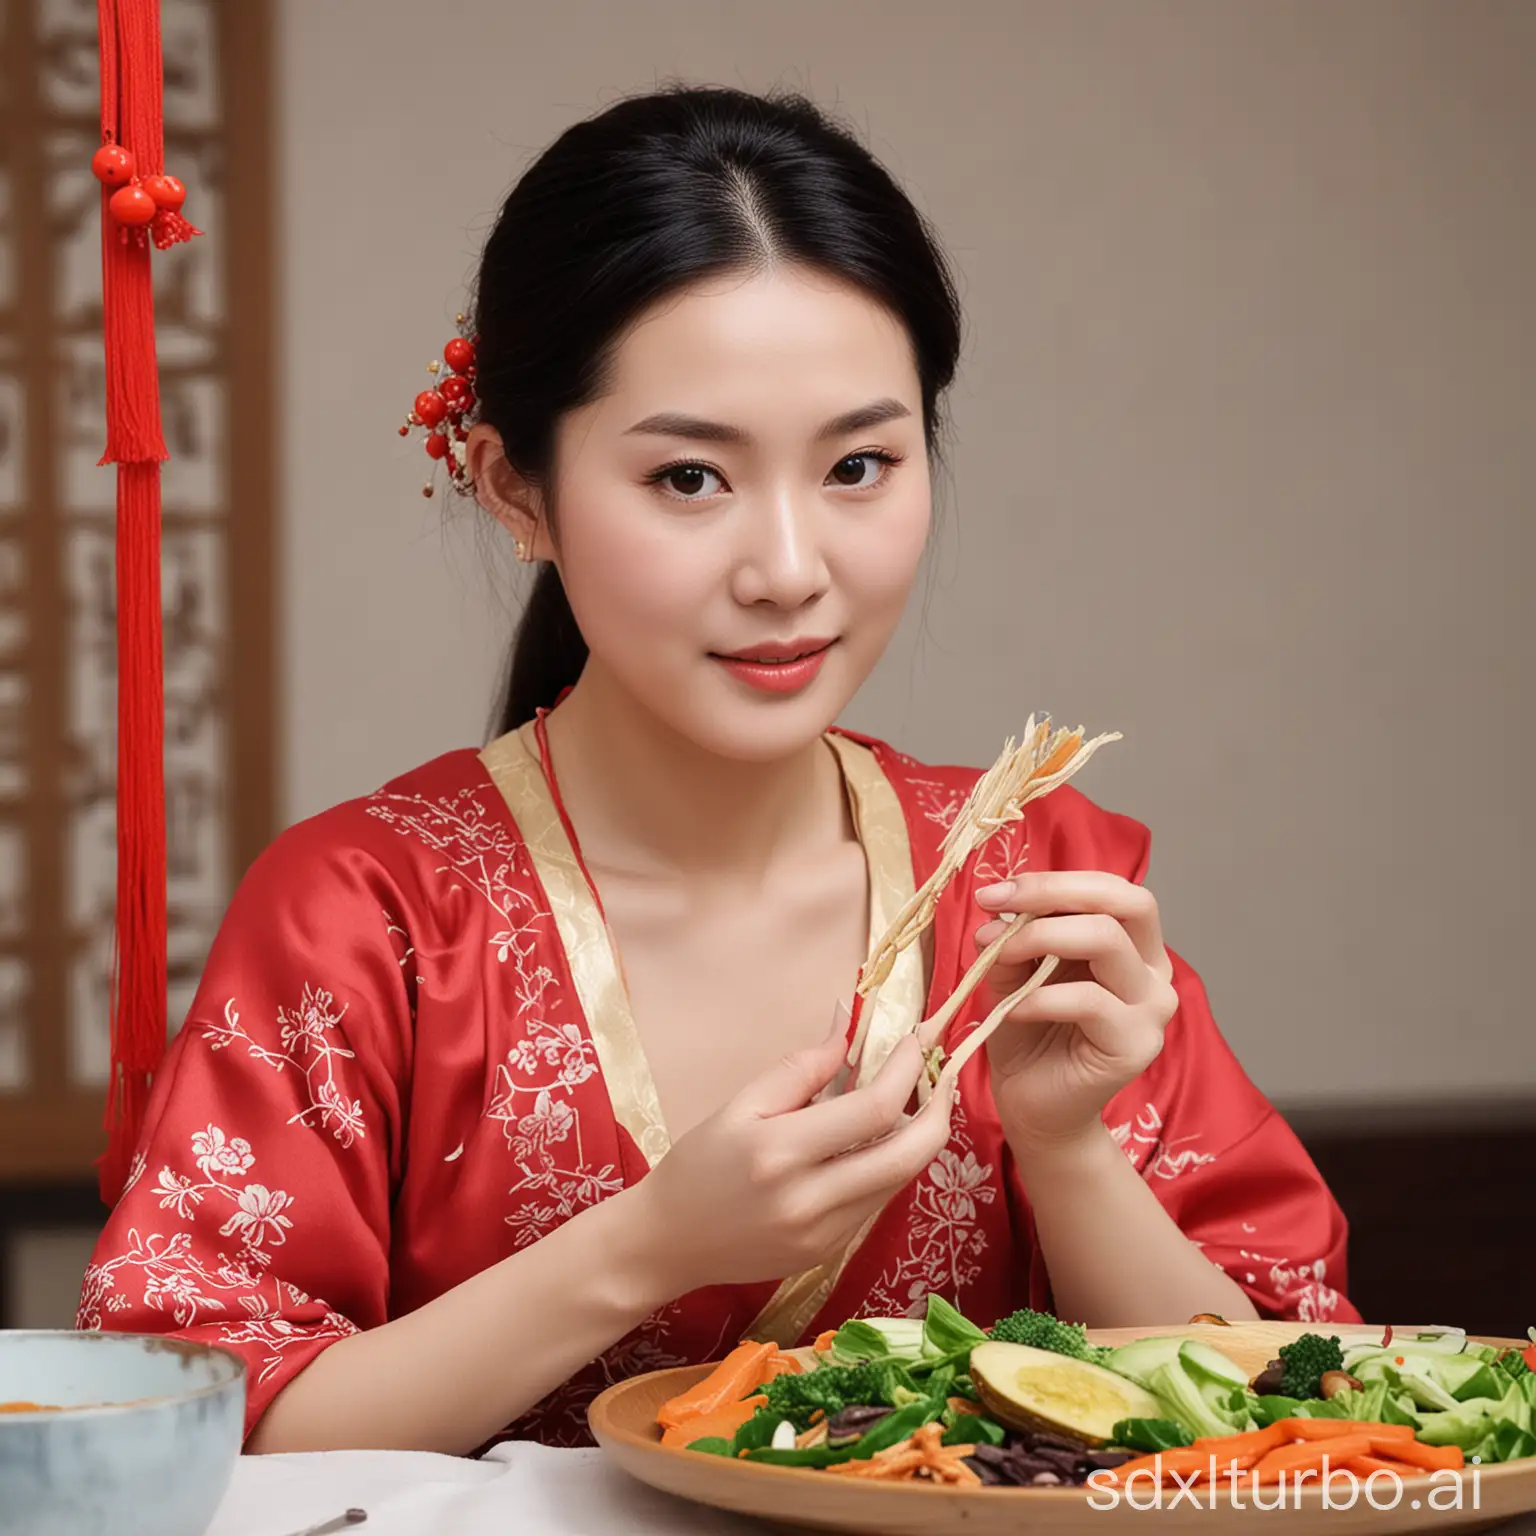 倡导健康饮食与爱美的中国
女性

